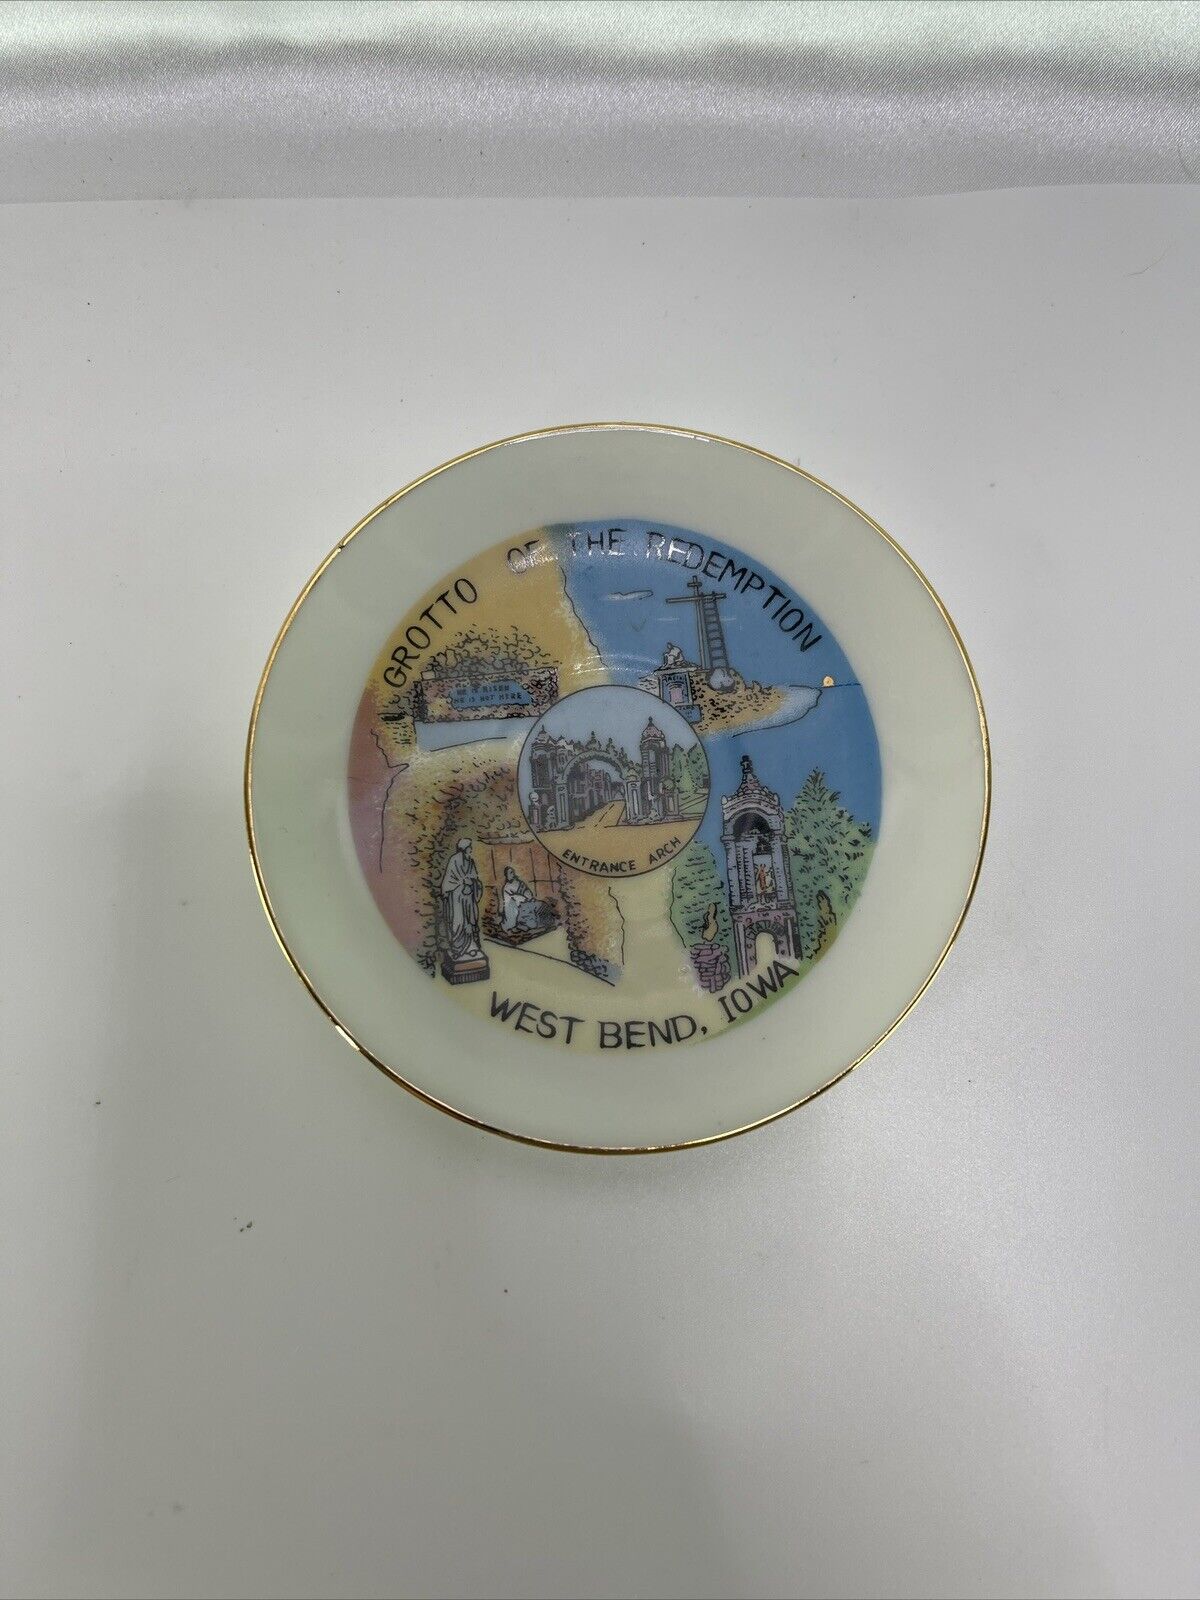 Vintage Miniature Souvenir Plate Dish Grotto of the Redemption West Bend Iowa 4”